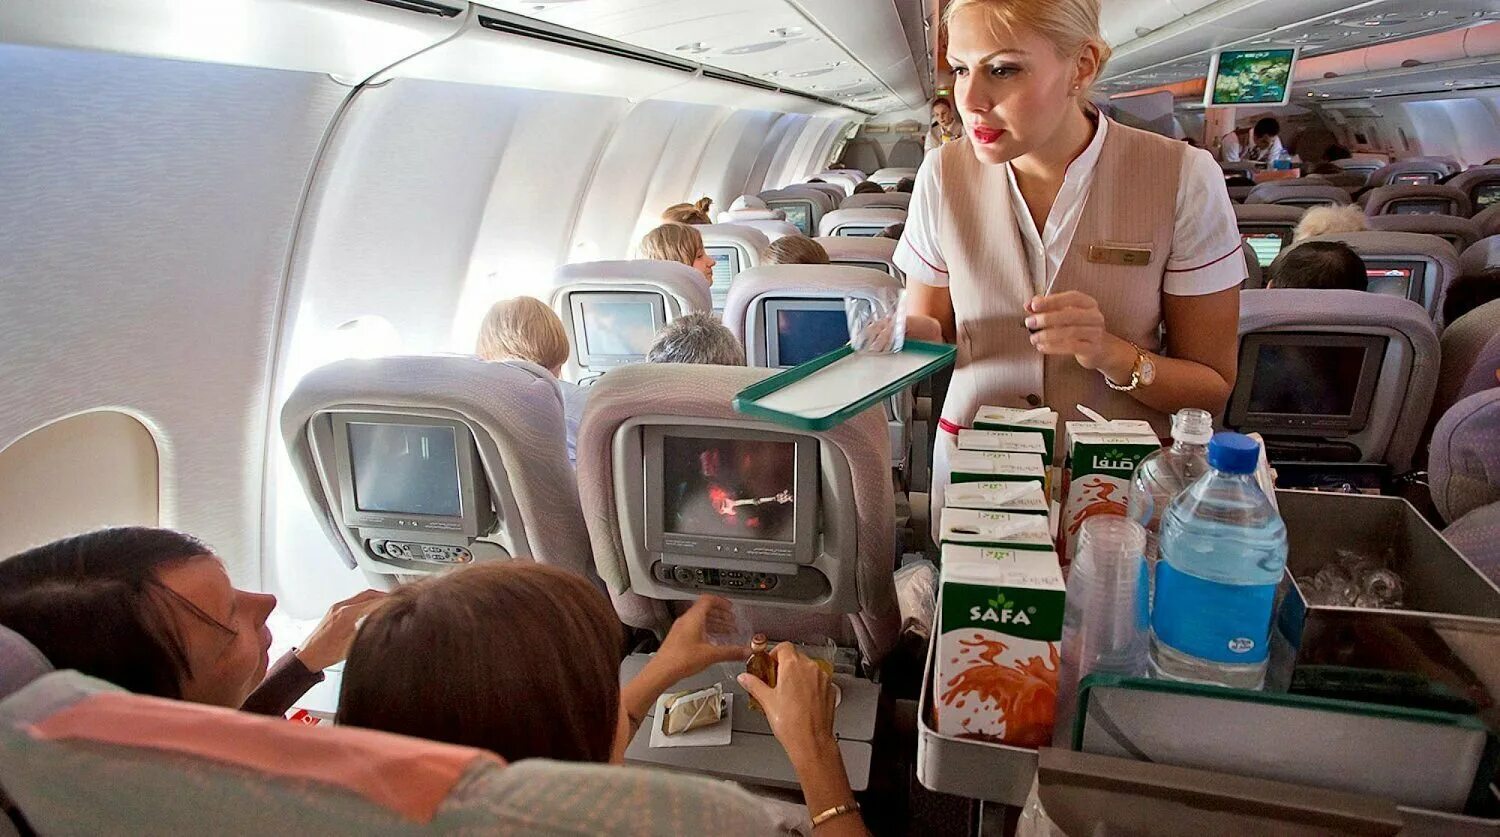 Самолете дают еду. Самолет с пассажиром. Борт самолета. Салонтсамолета с пассажипраи. Самолет кушать.